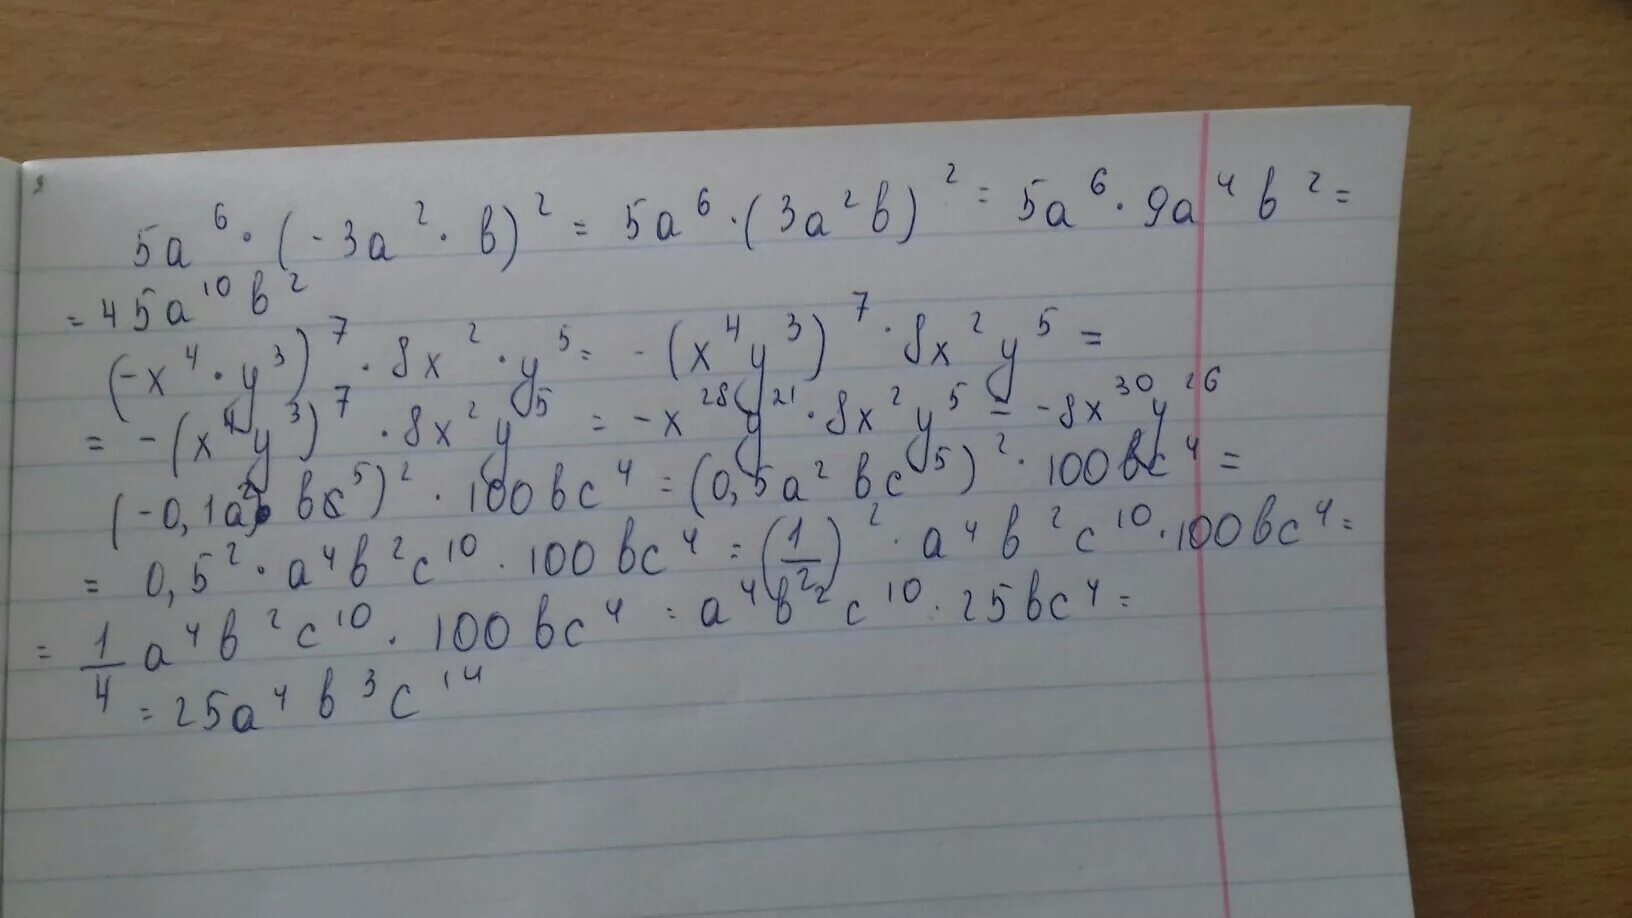 X 4 2 y 5 3. Упростите выражение -x-y=3 x2+y2=5. 4x-5-7x+2+3x-1-3y+2+3x-y упростить выражение. (4y-x^4+3x^2y)+(-5y-7x^2-4x^4) упростить выражение. Упростите выражение 4x+2x+6/x2-1.